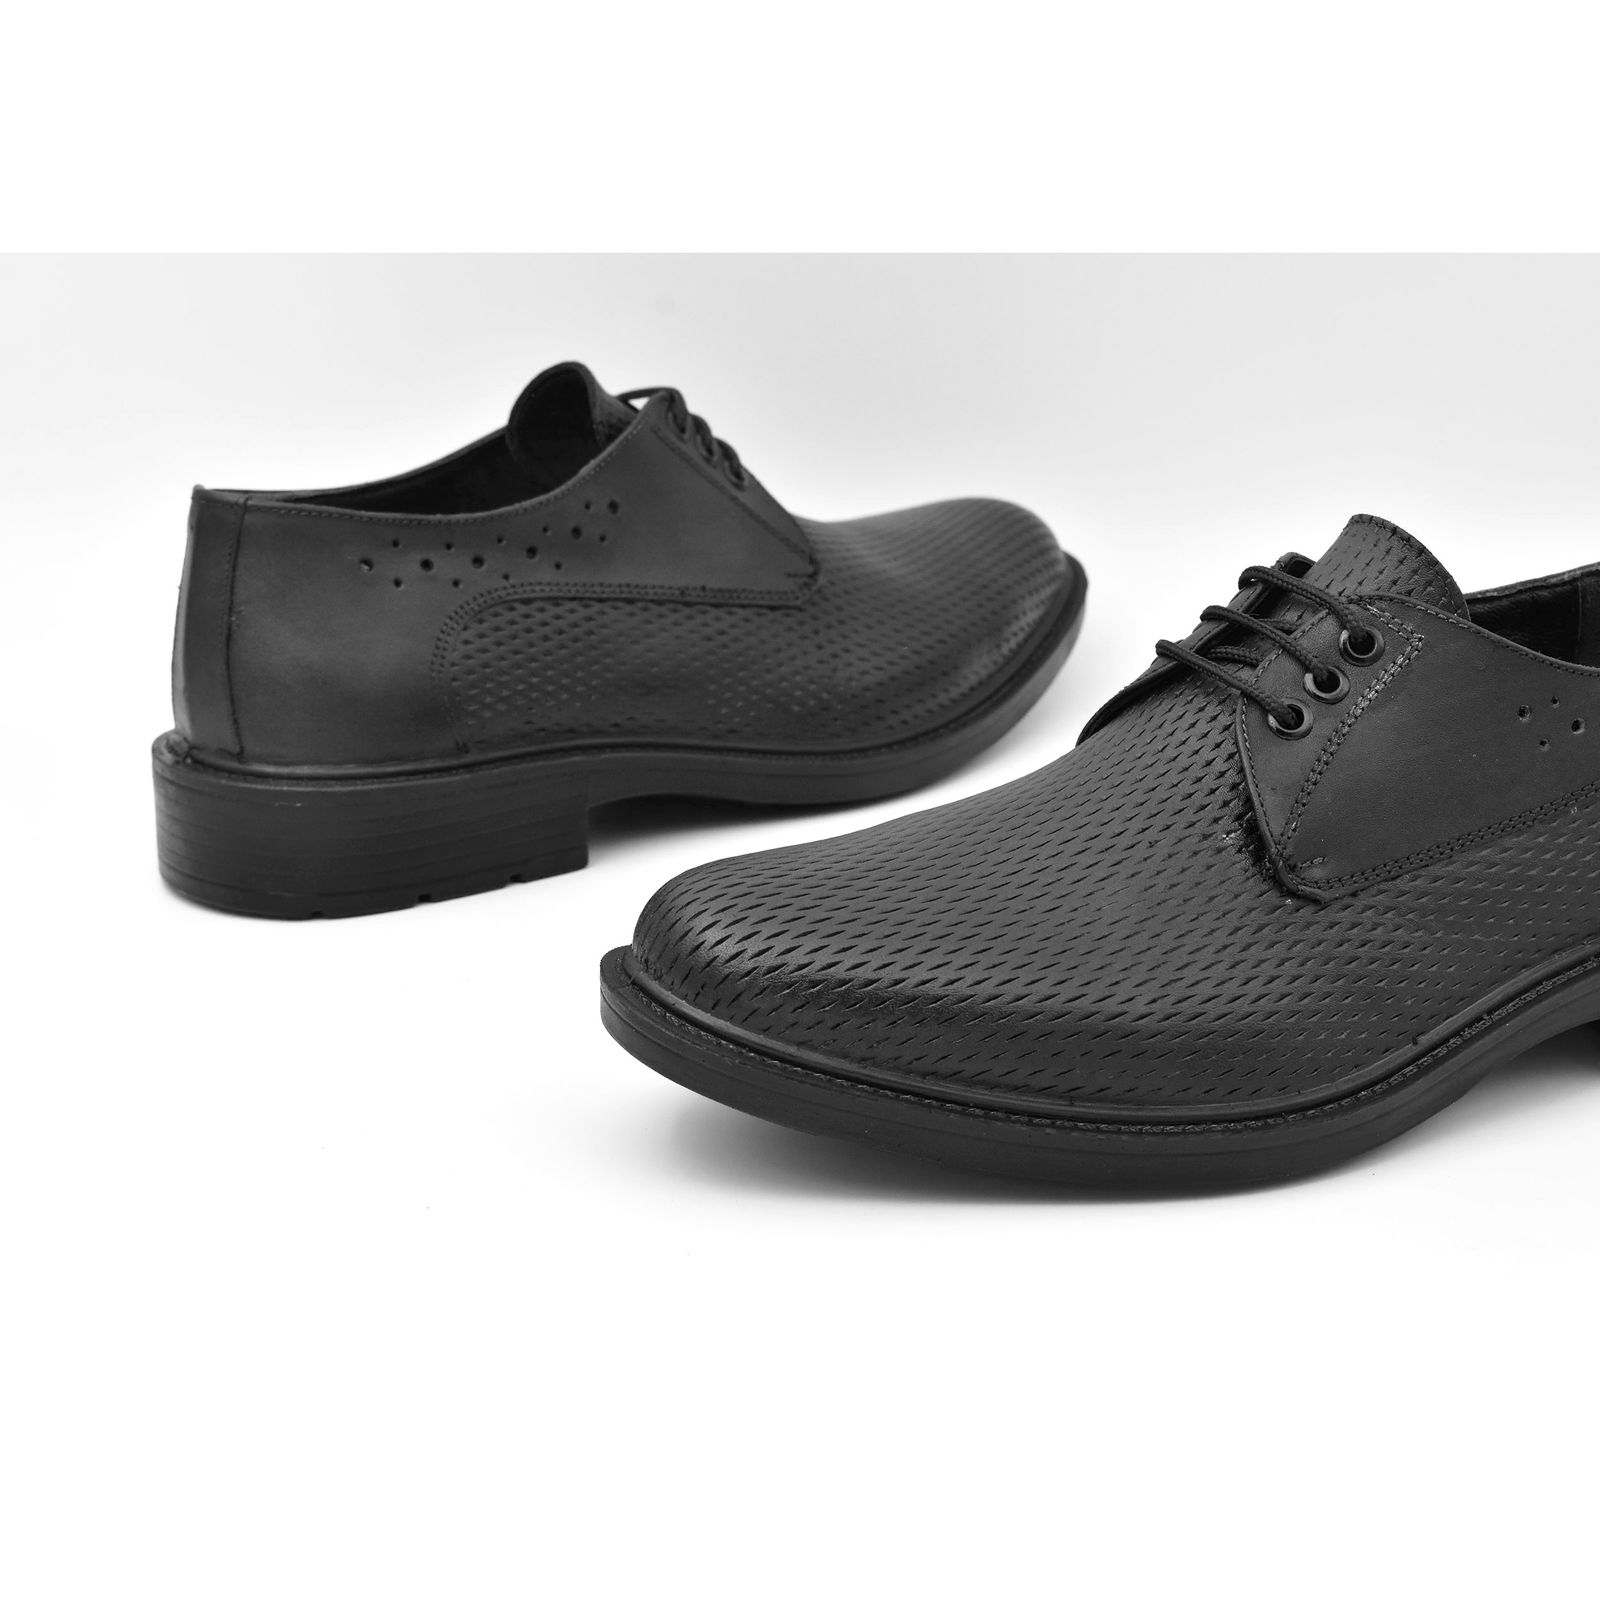 کفش مردانه پاما مدل Morano کد G1184 -  - 8